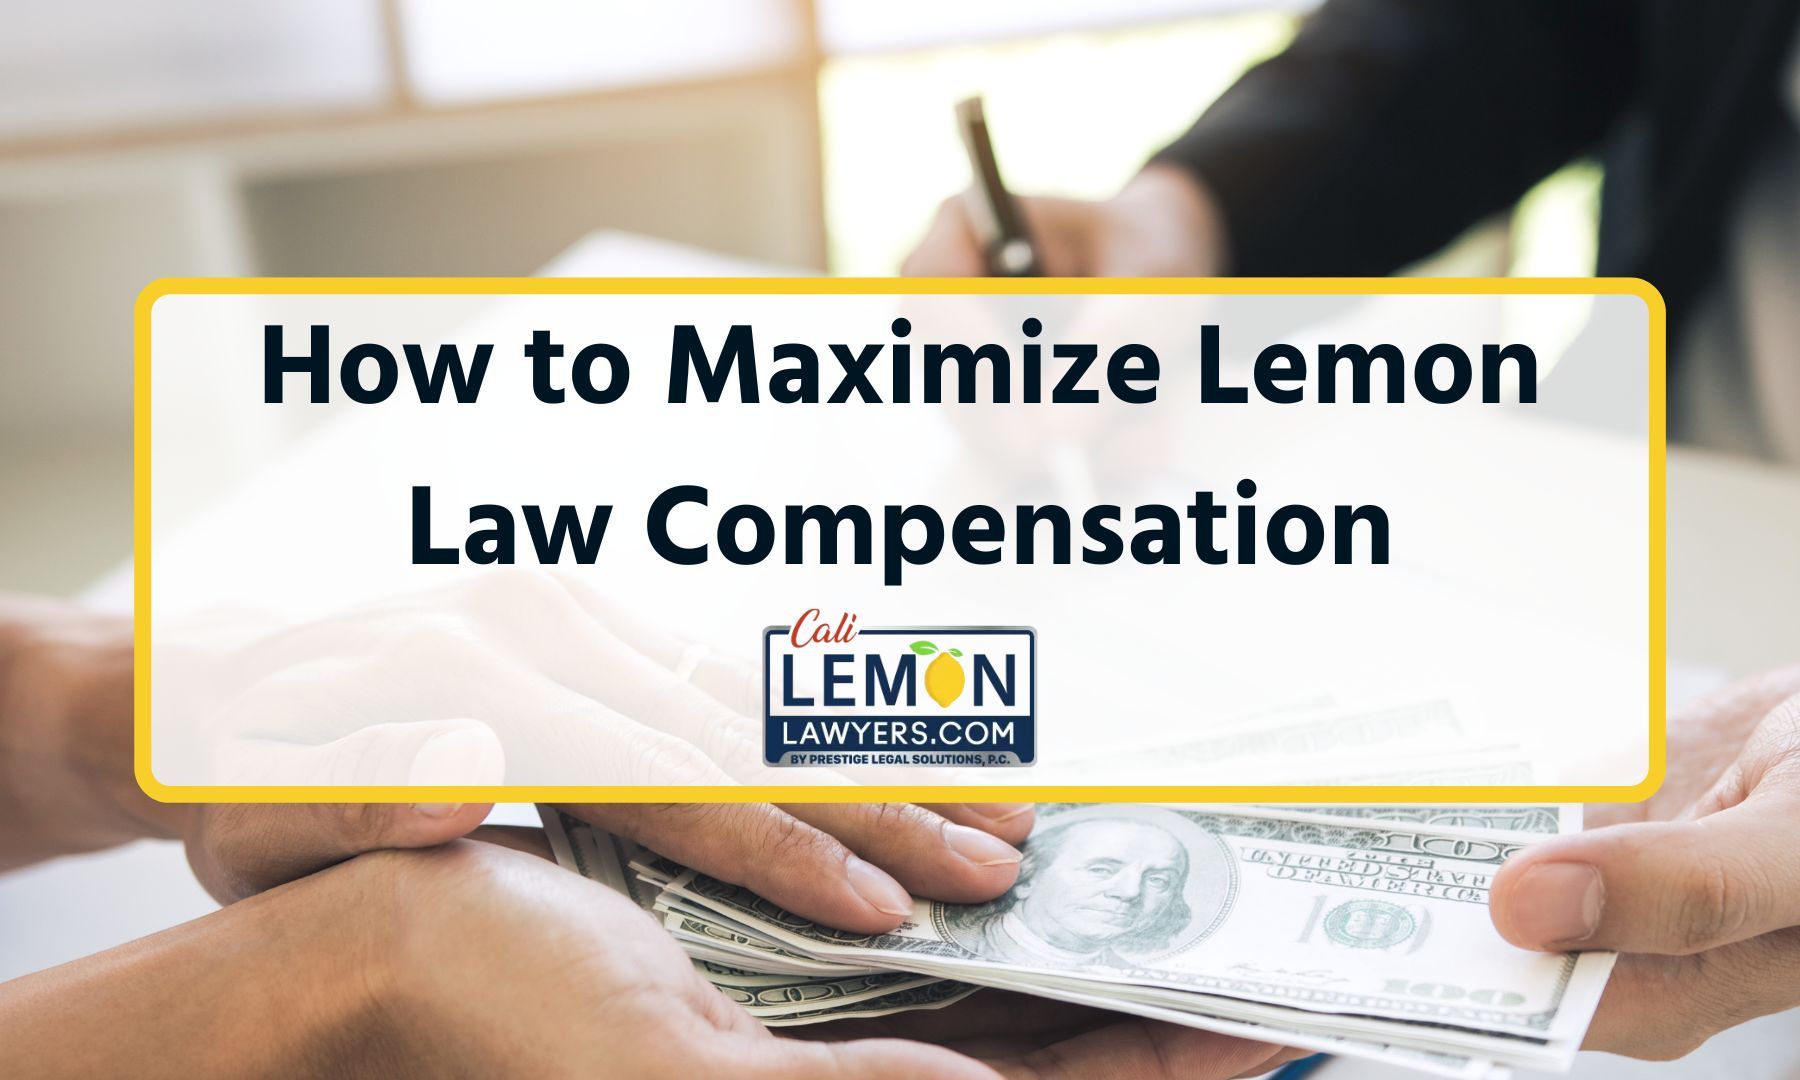 Lemon Law Compensation